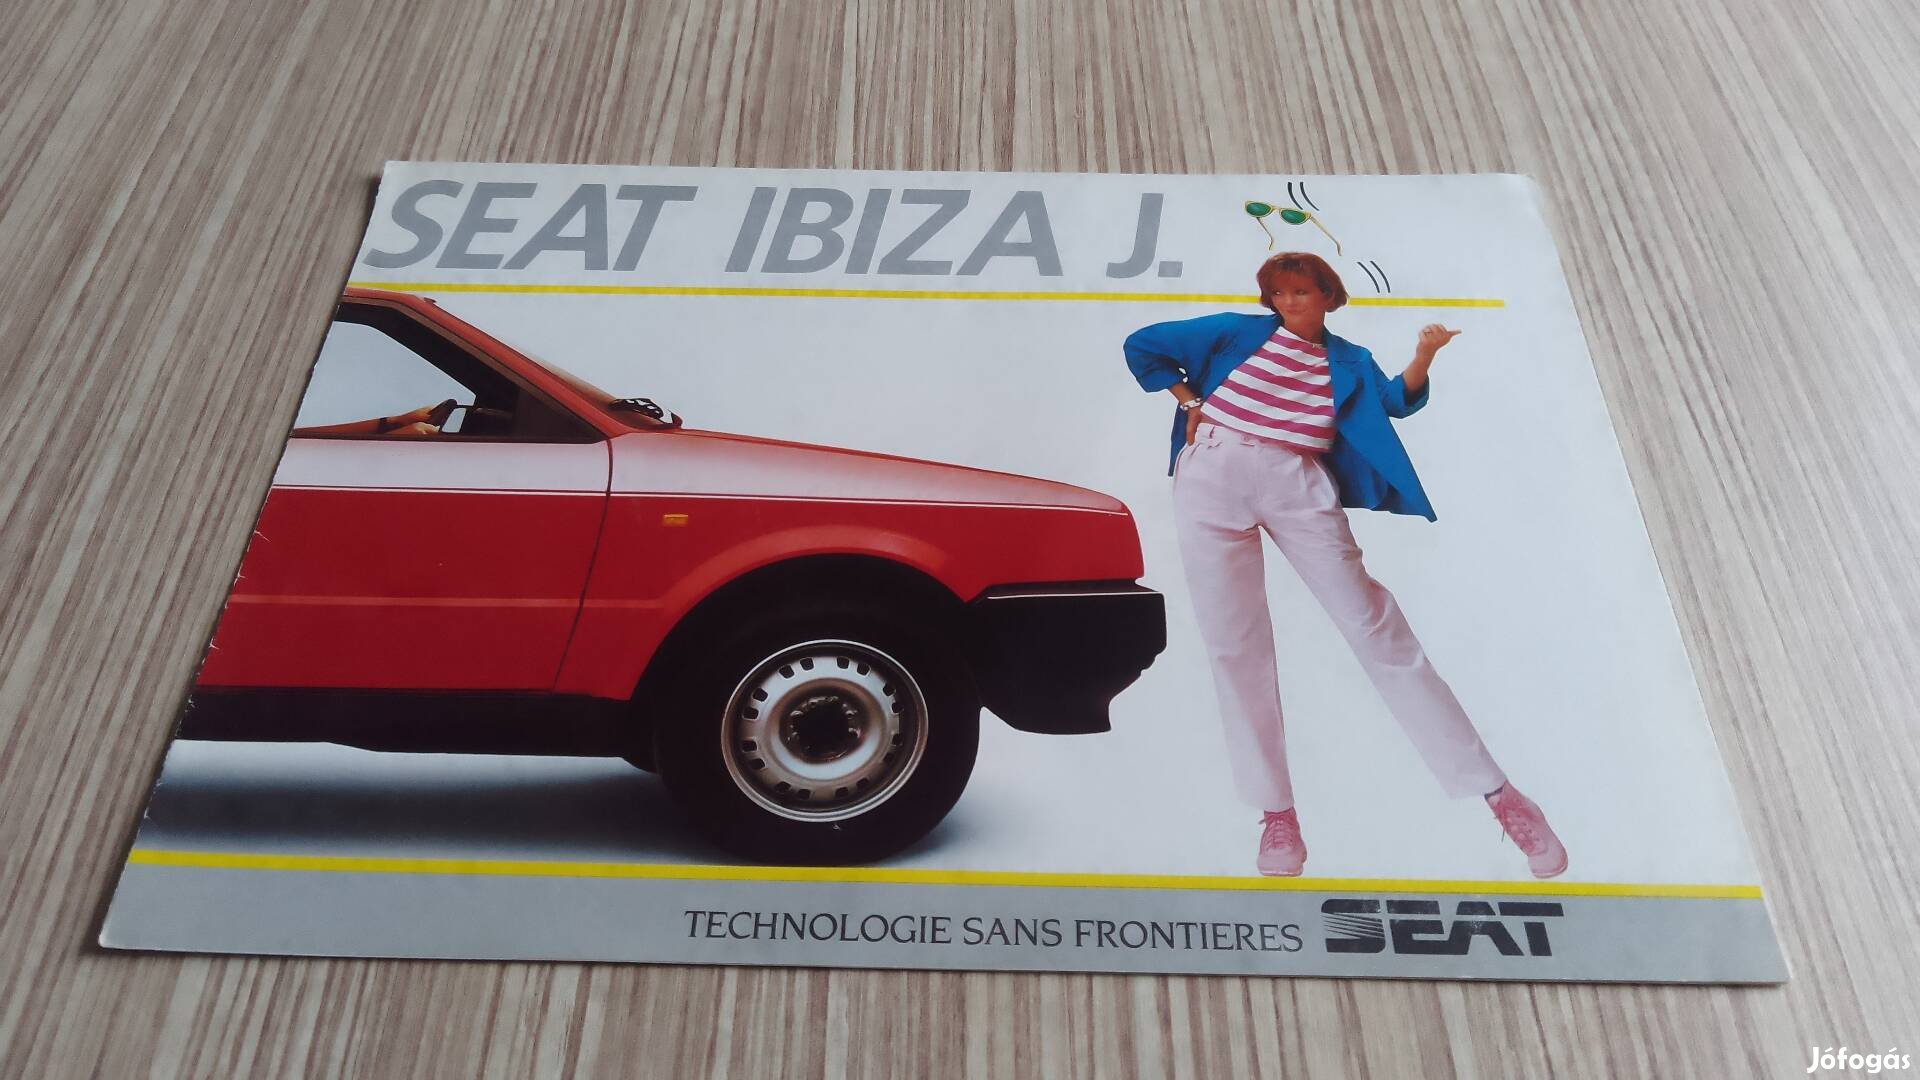 Seat Ibiza J. (1986) prospektus, katalógus.